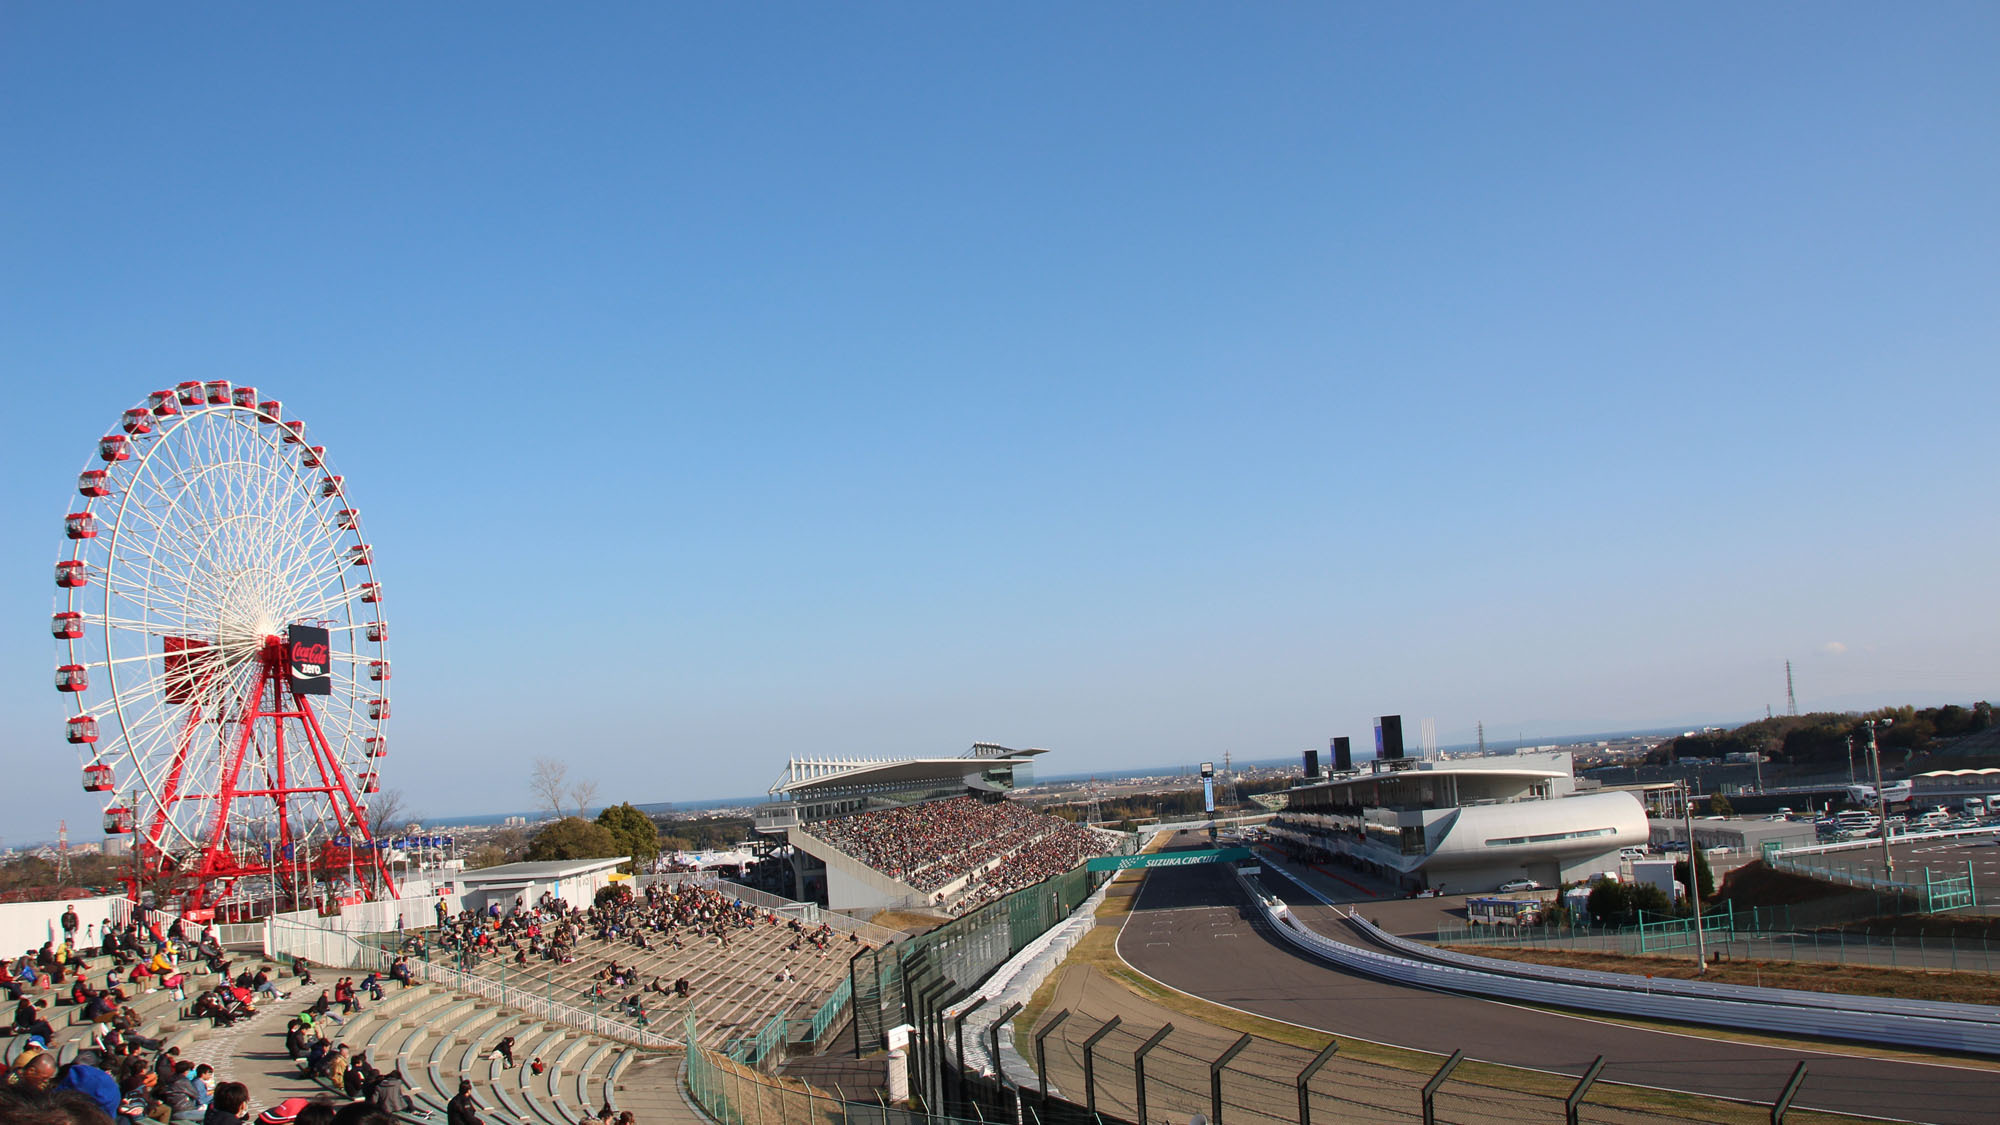 国際レーシングコースF1日本GPや鈴鹿8耐が開催さる「鈴鹿サーキット」へは、車で約30分です。